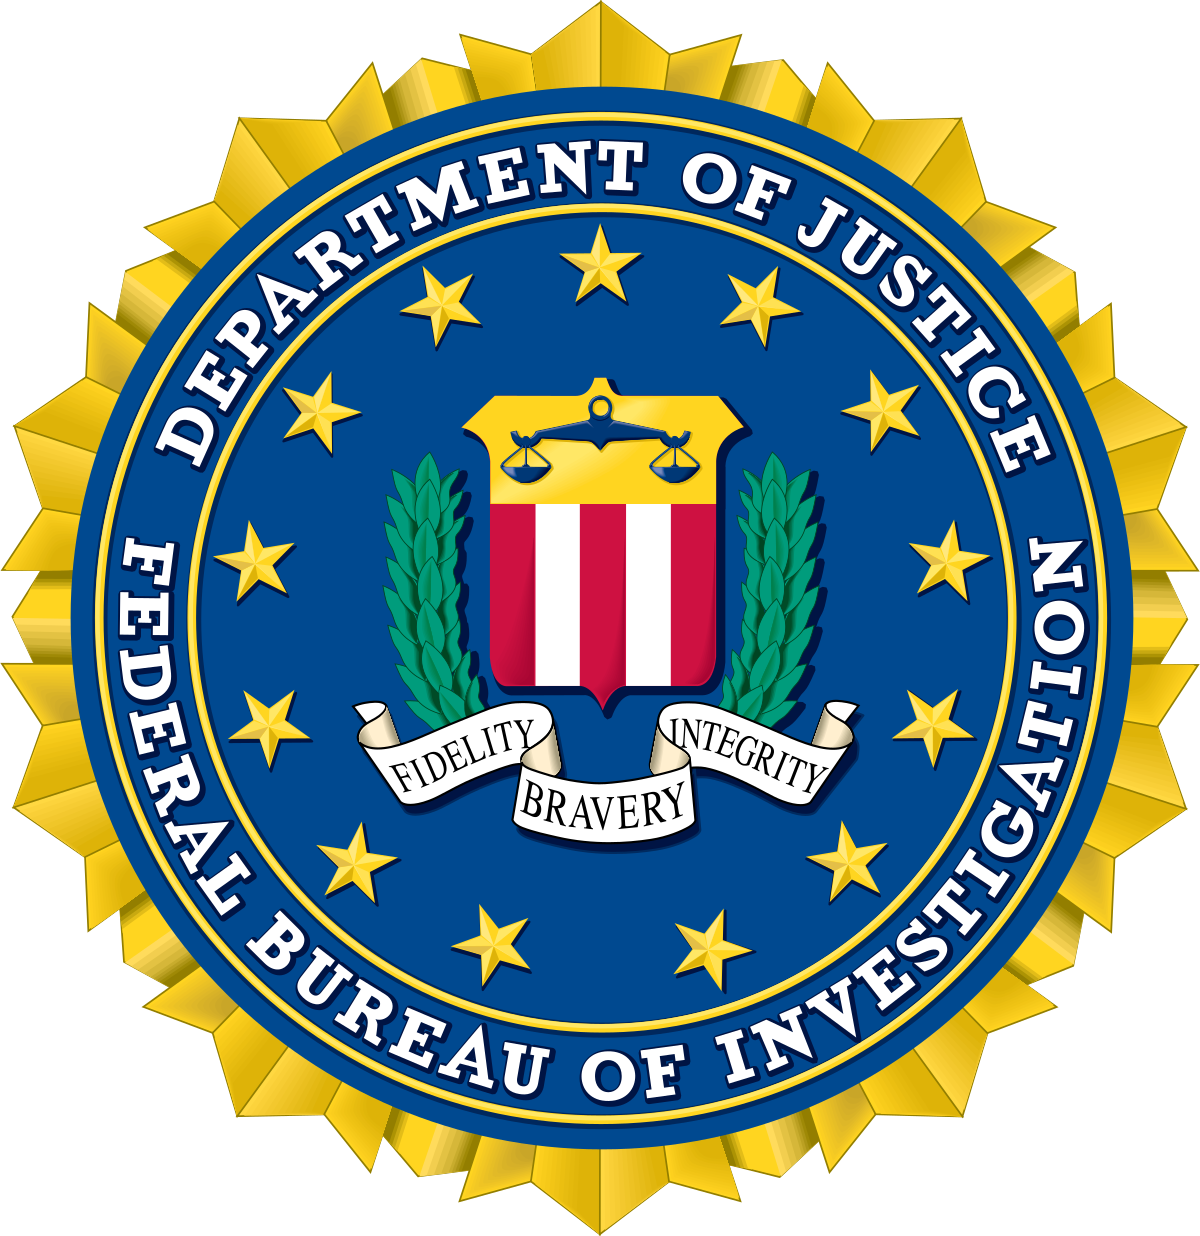 FBI emblem on dark background